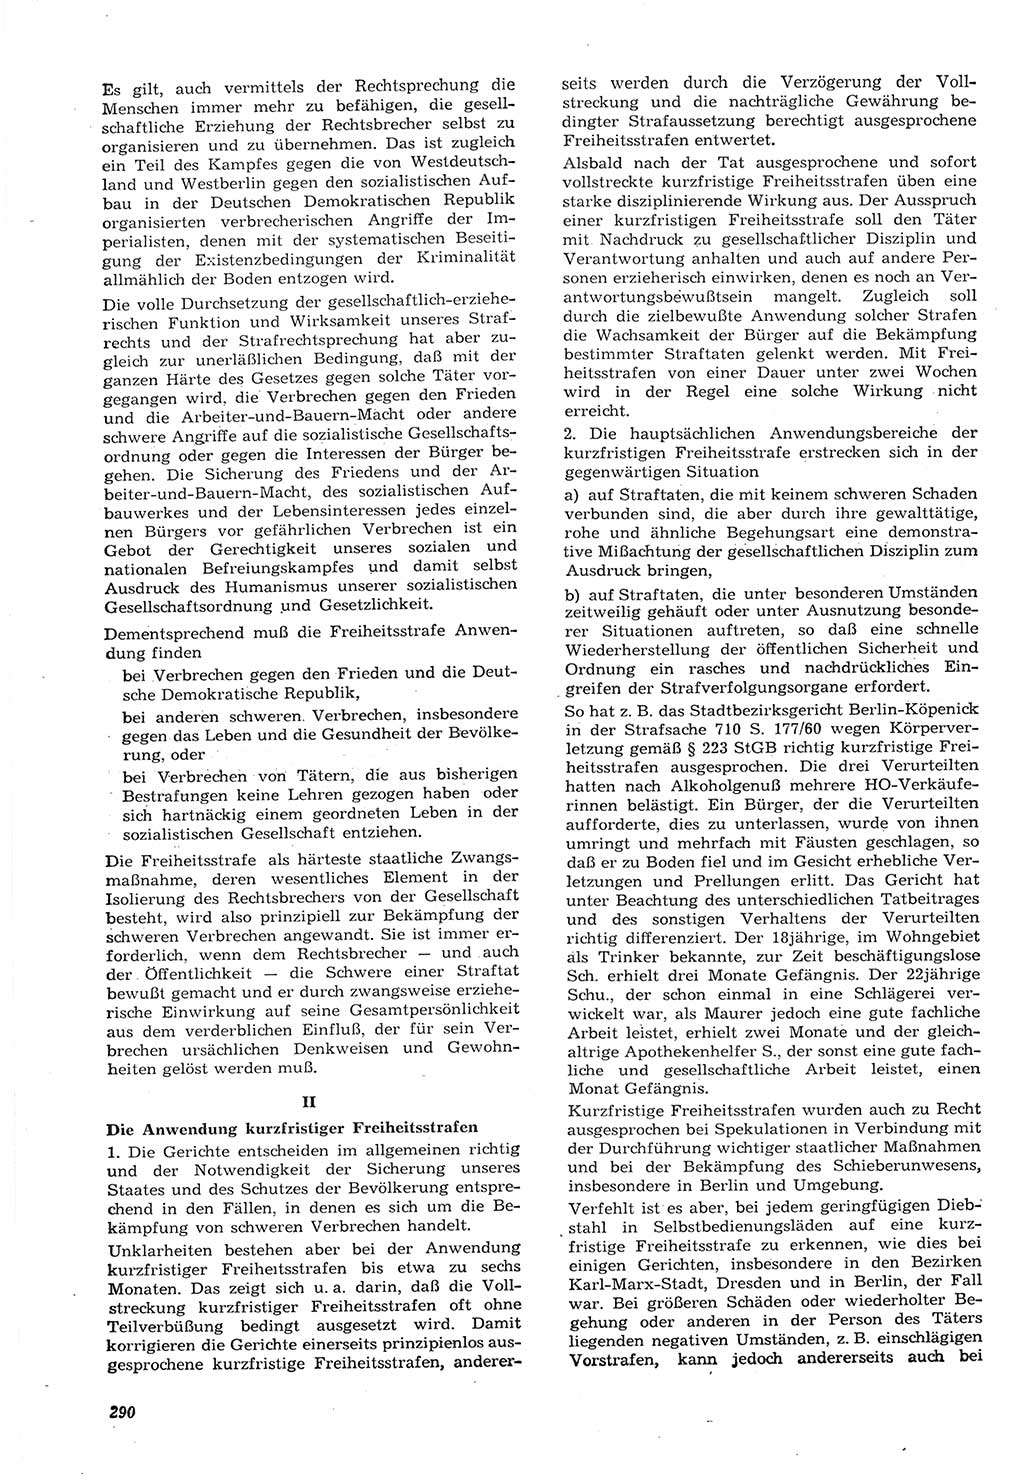 Neue Justiz (NJ), Zeitschrift für Recht und Rechtswissenschaft [Deutsche Demokratische Republik (DDR)], 15. Jahrgang 1961, Seite 290 (NJ DDR 1961, S. 290)